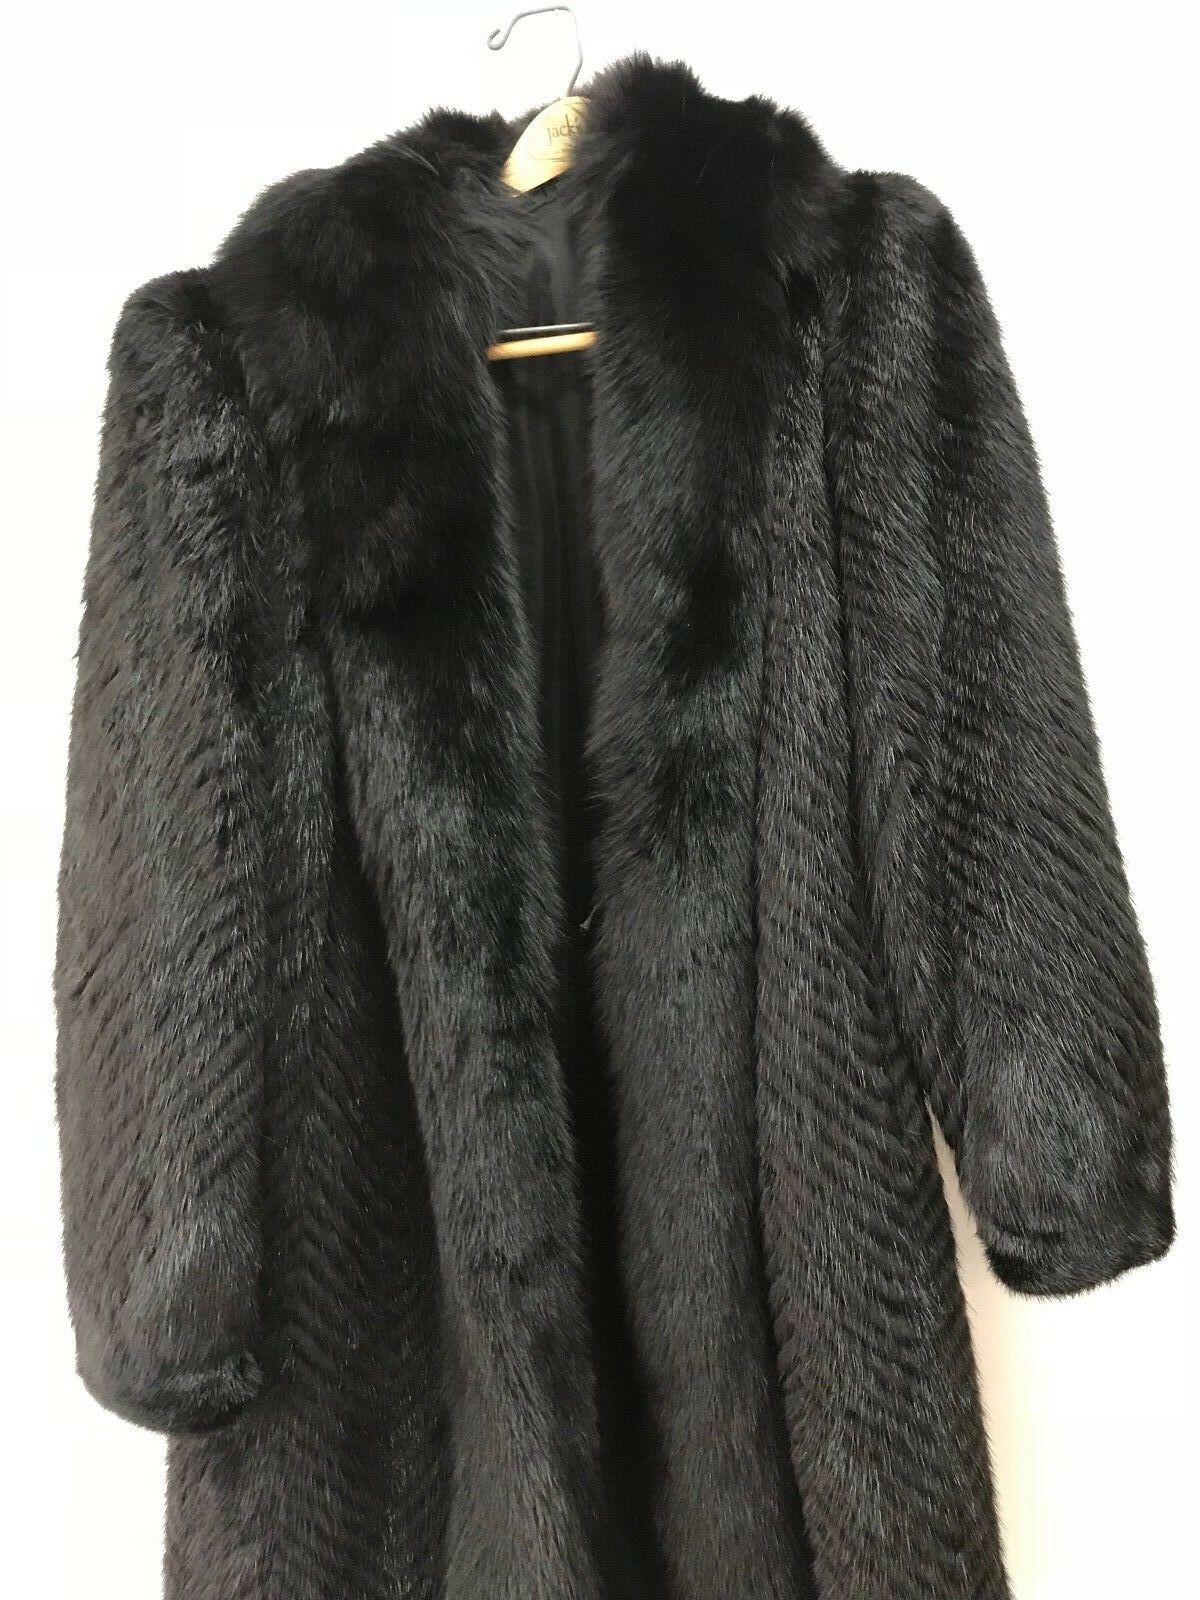 American Legend Clothing Fur Coat - Coats & Jackets